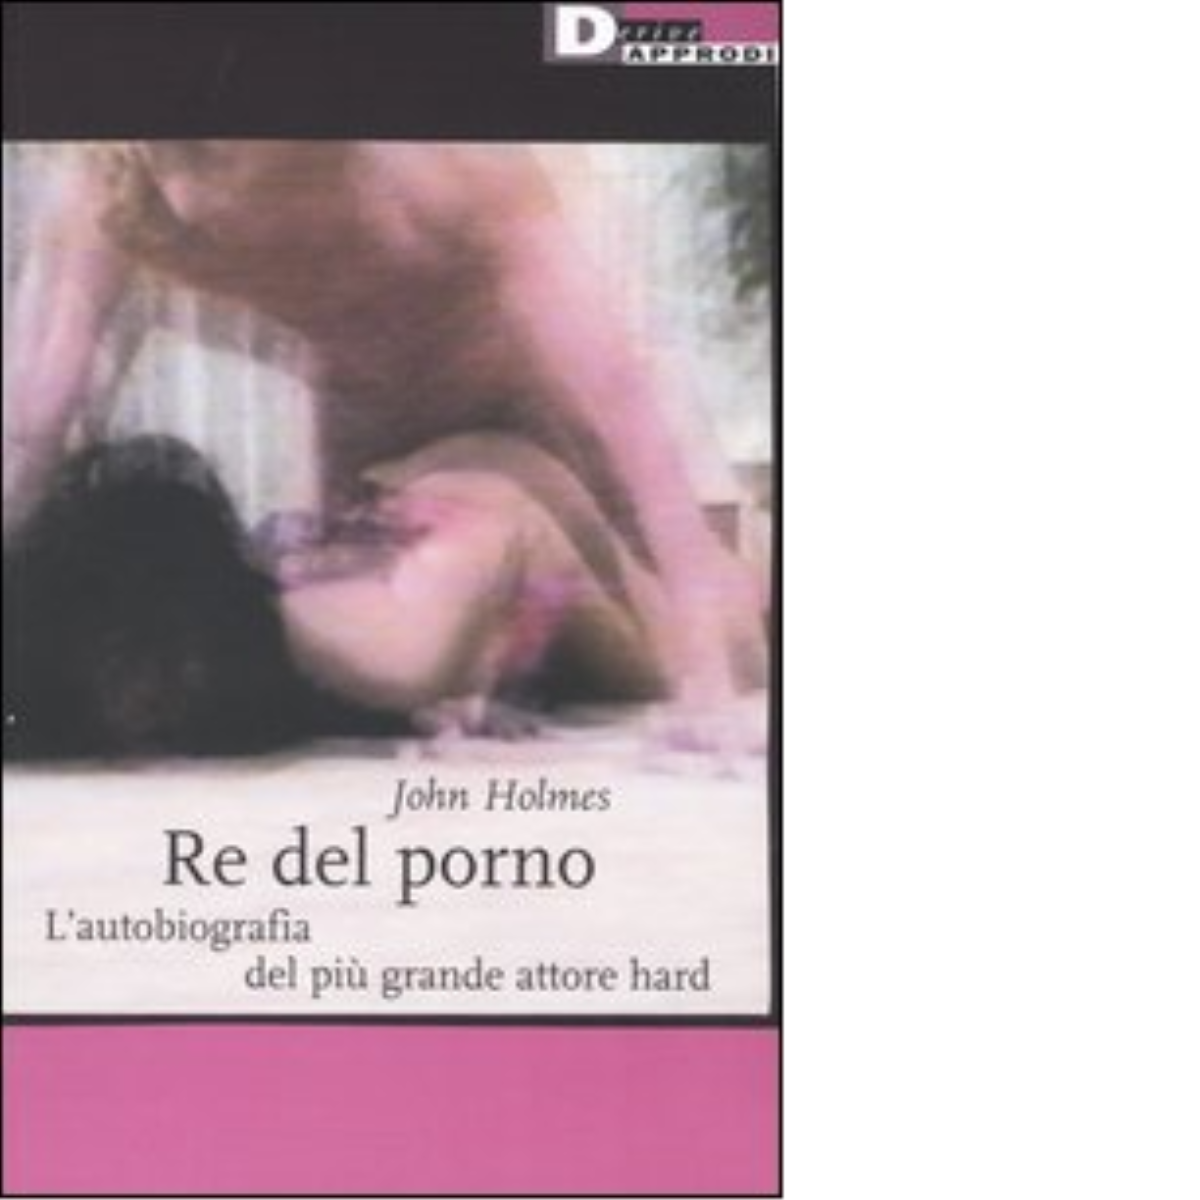 RE DEL PORNO. N.E. di JOHN HOLMES - DeriveApprodi editore, 2003